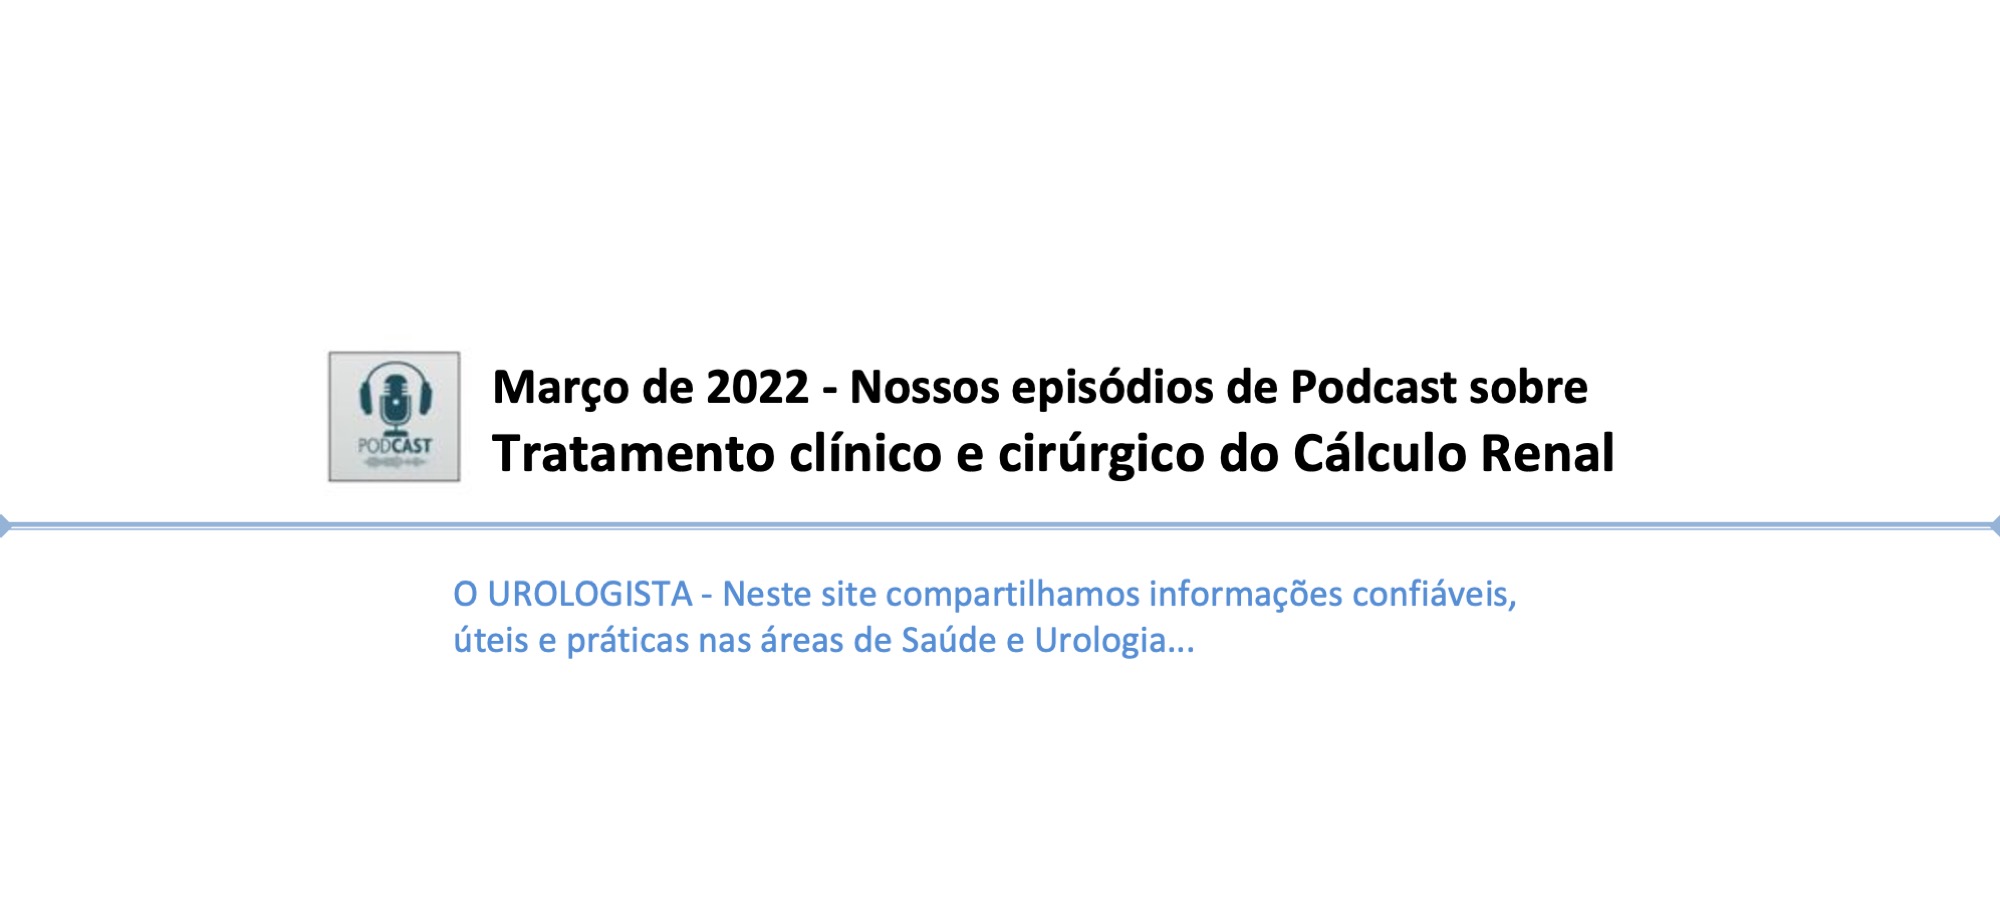 Março de 2022 - Nossos episódios de Podcast sobre Tratamento clínico e cirúrgico do Cálculo Renal